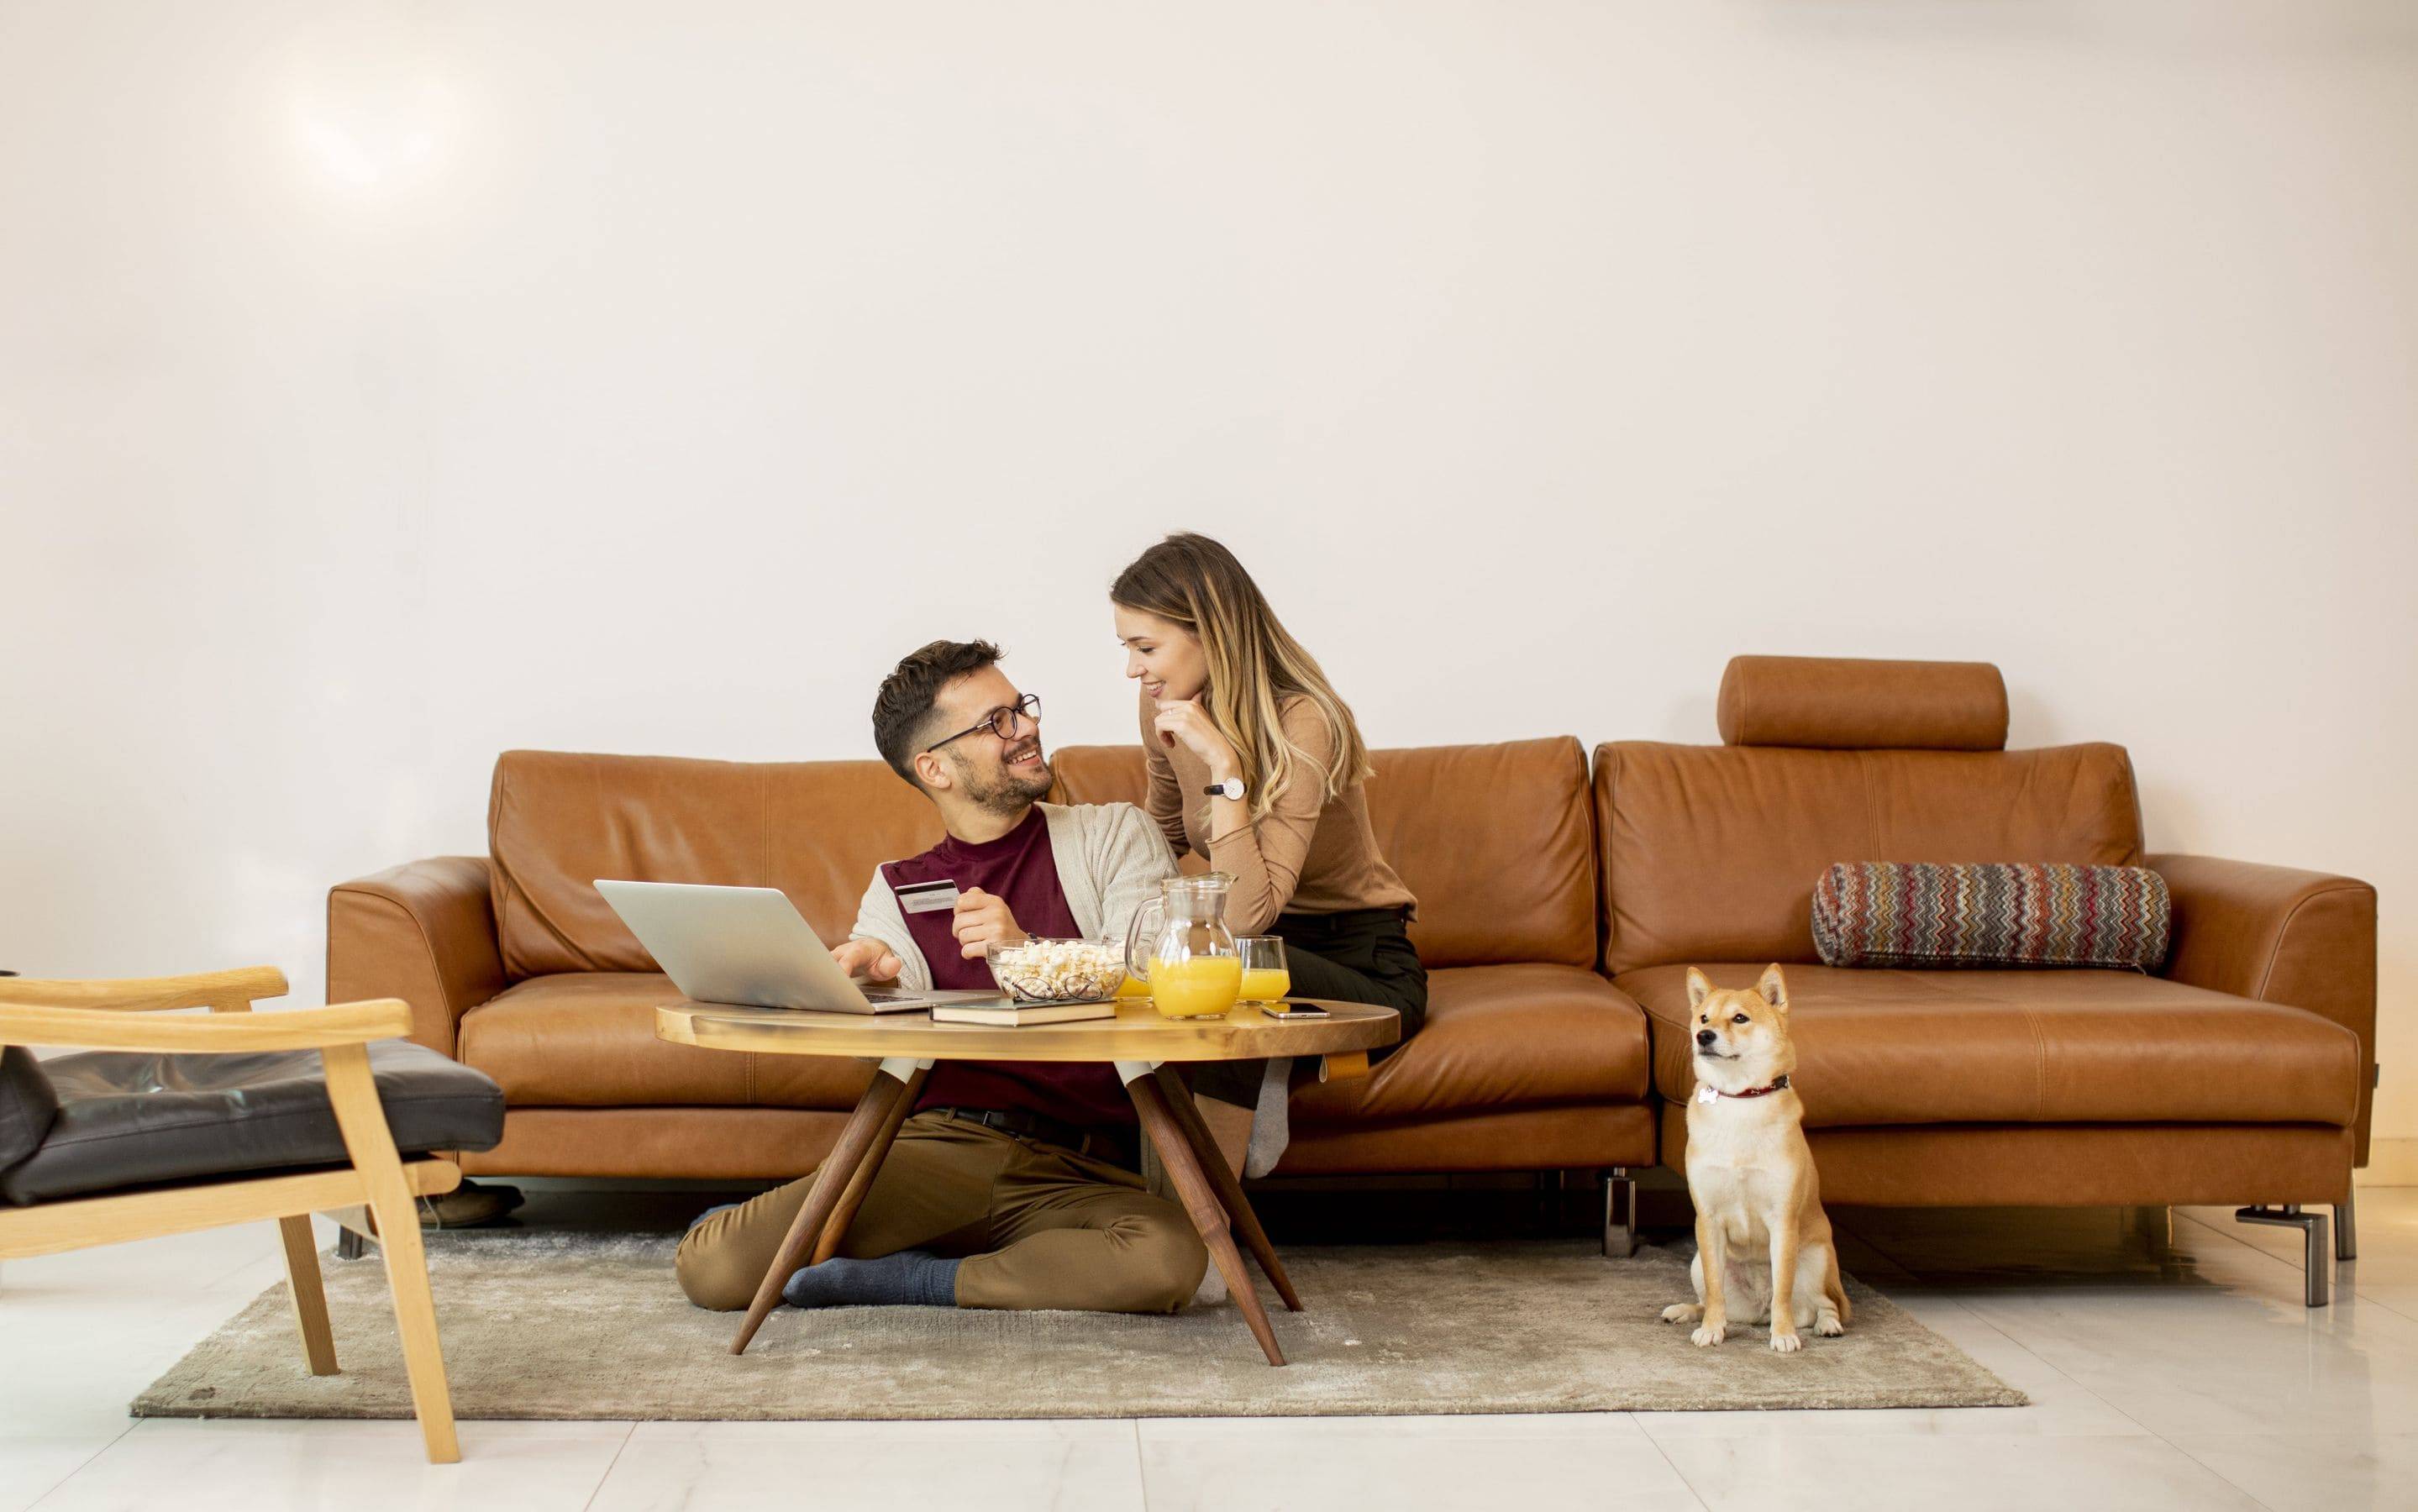 casal feliz na sala de estar, com seu cachorro. Um notebook sobre a mesa, pote com pipocas, suco de laranja.